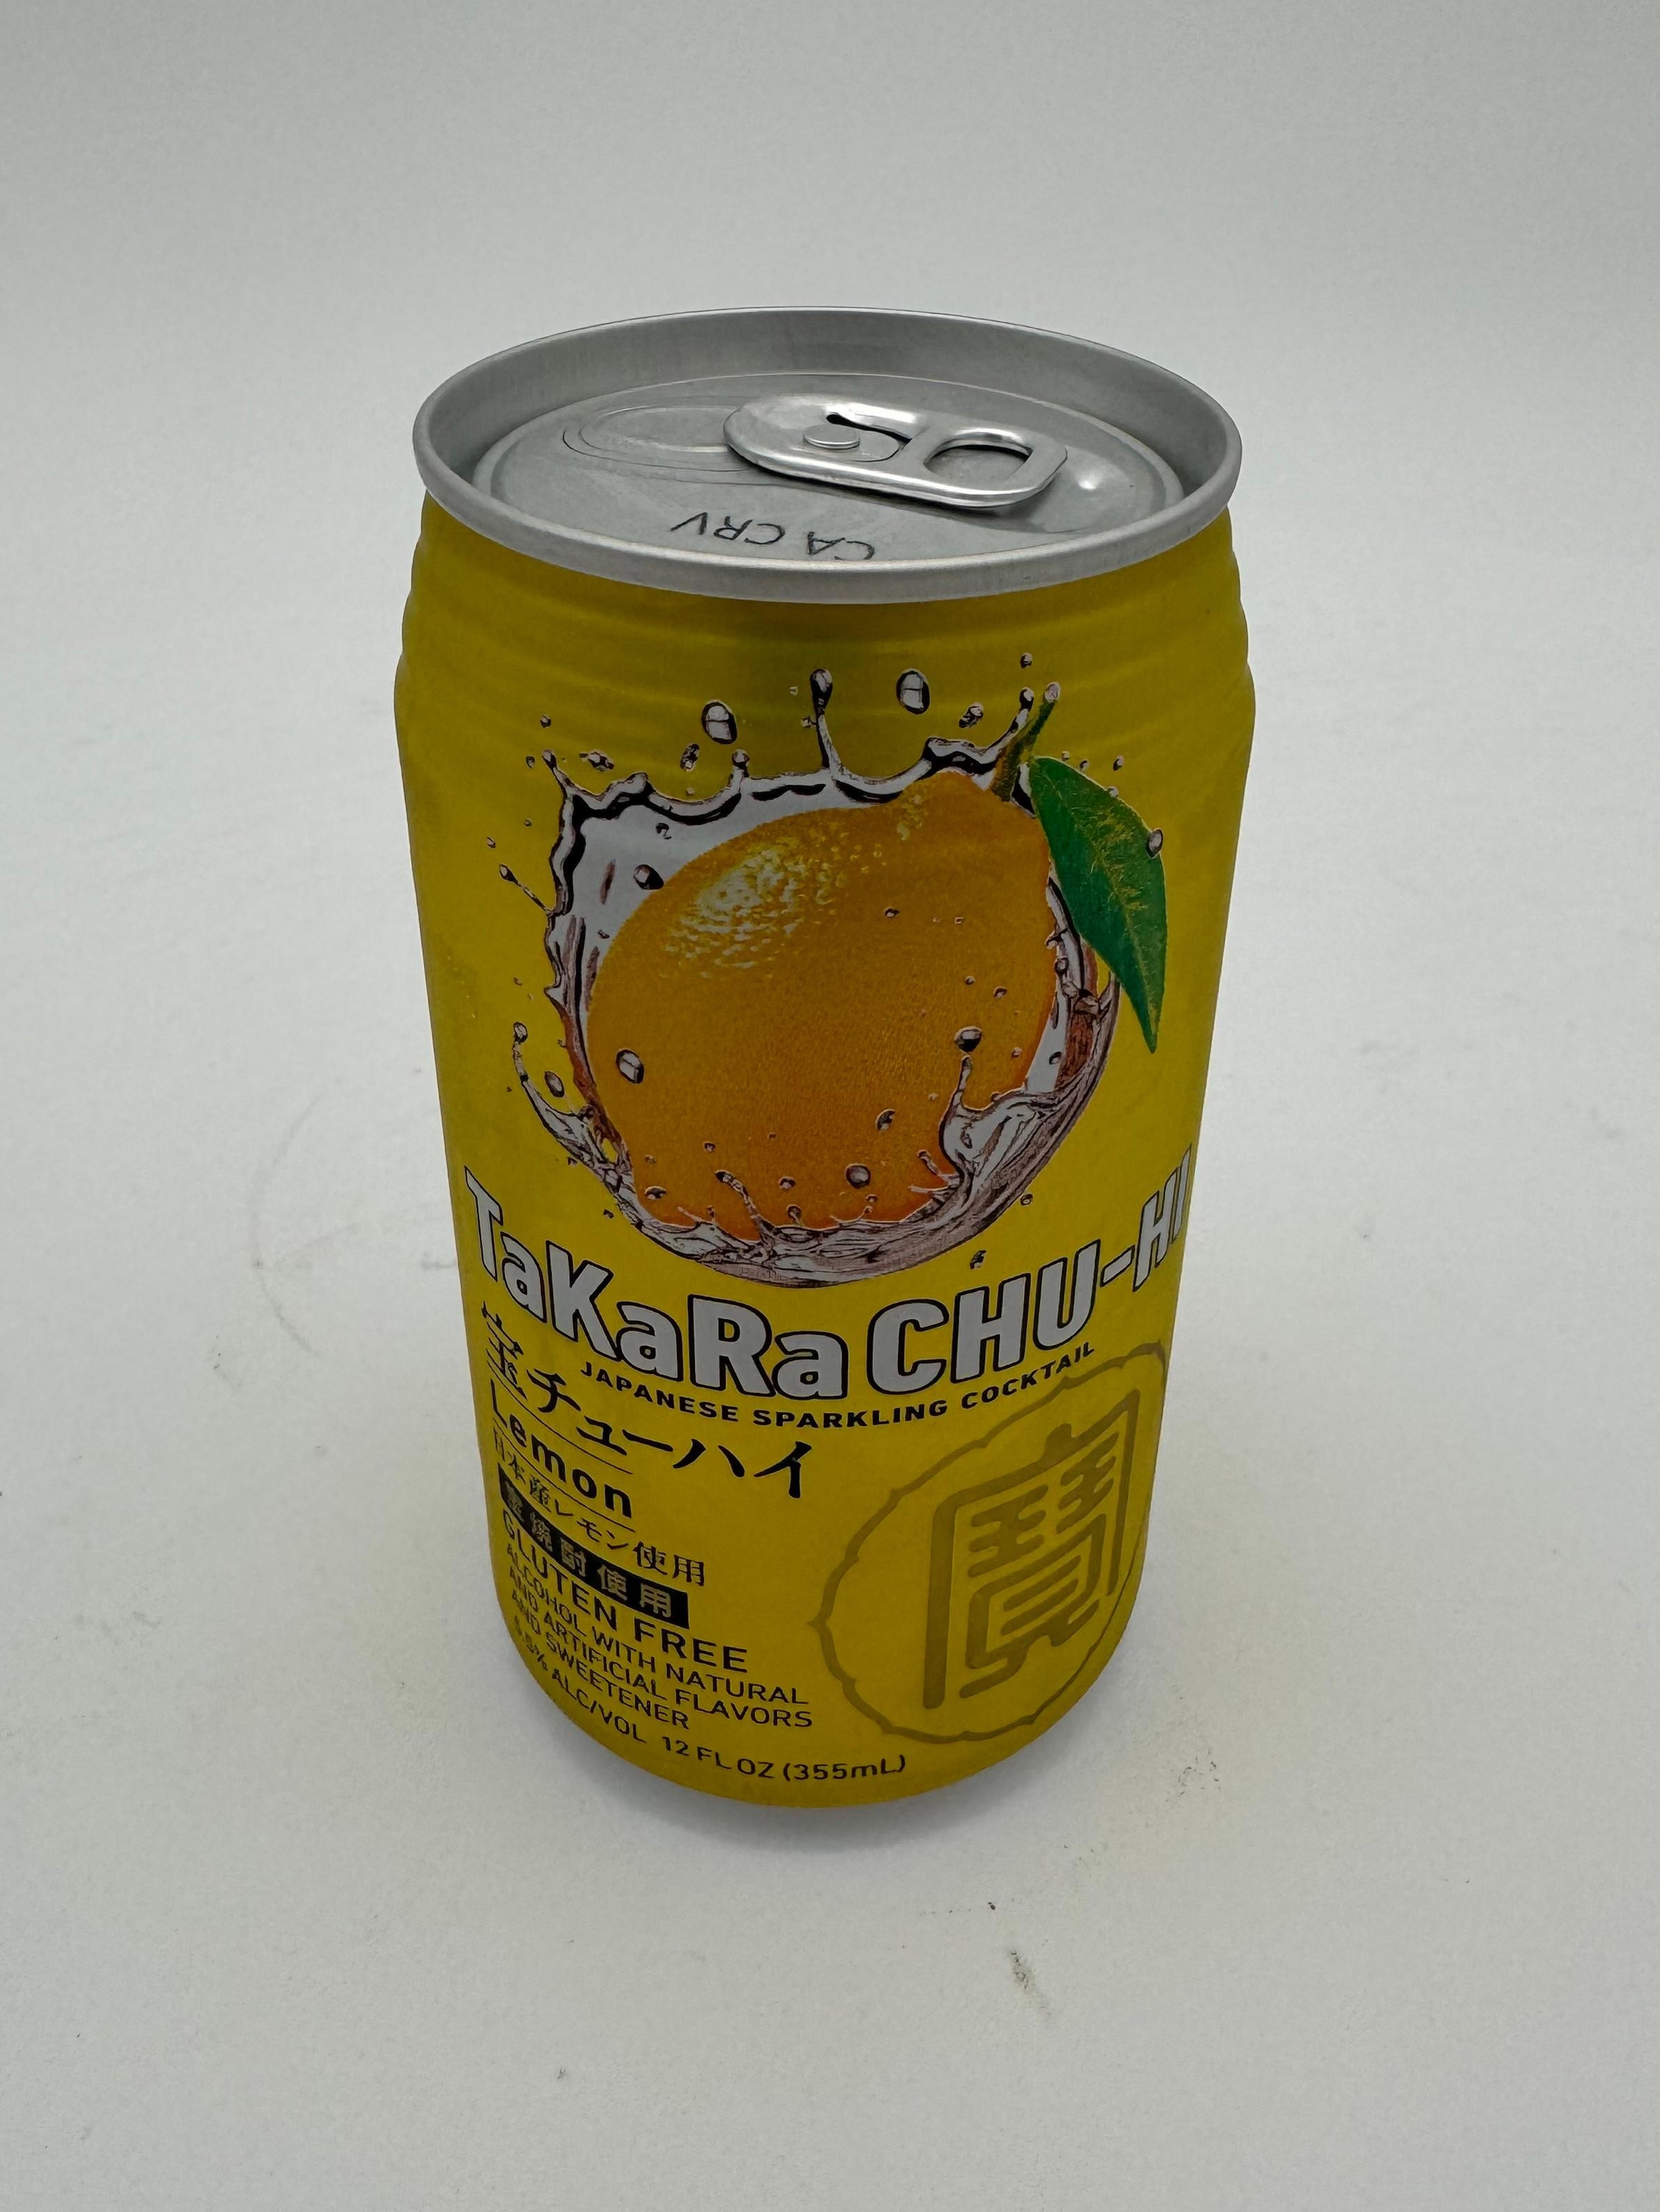 Takara Chu-Hi Lemon